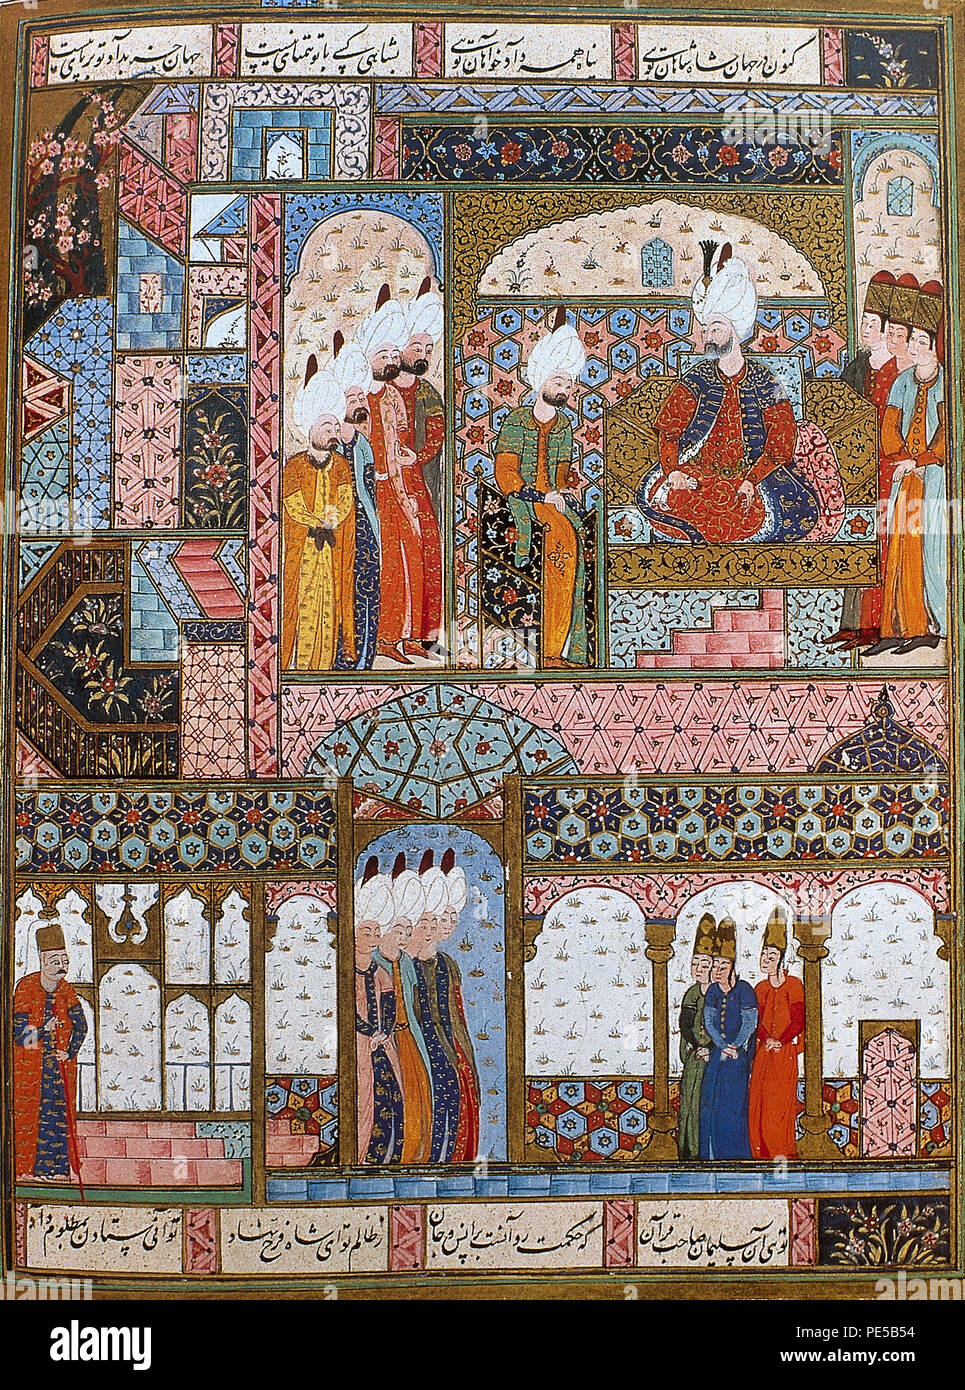 Suleiman dem Prächtigen (1494-1566). Osmanische Sultan. Suleiman die Rechtsetzung in der Topkapi Palast. Miniatur von Suleymanname, 16. Topkapi Palast Museum. Istanbul, Türkei. Stockfoto